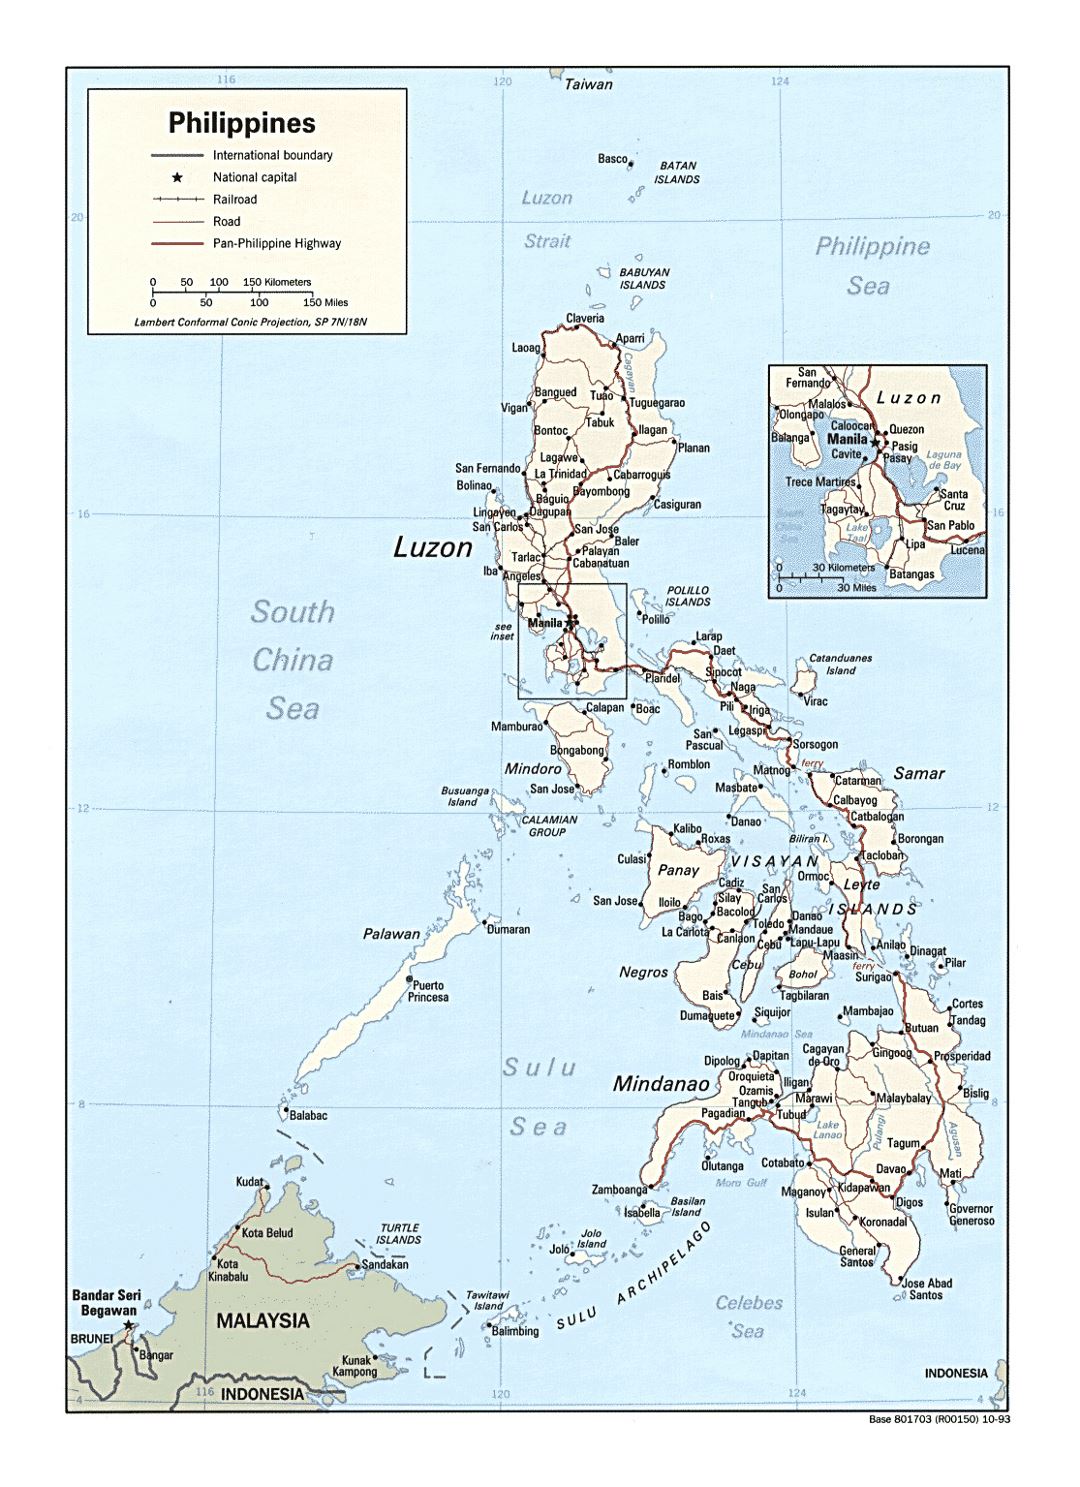 Детальная политическая карта Филиппин с дорогами, железными дорогами и крупными городами - 1993